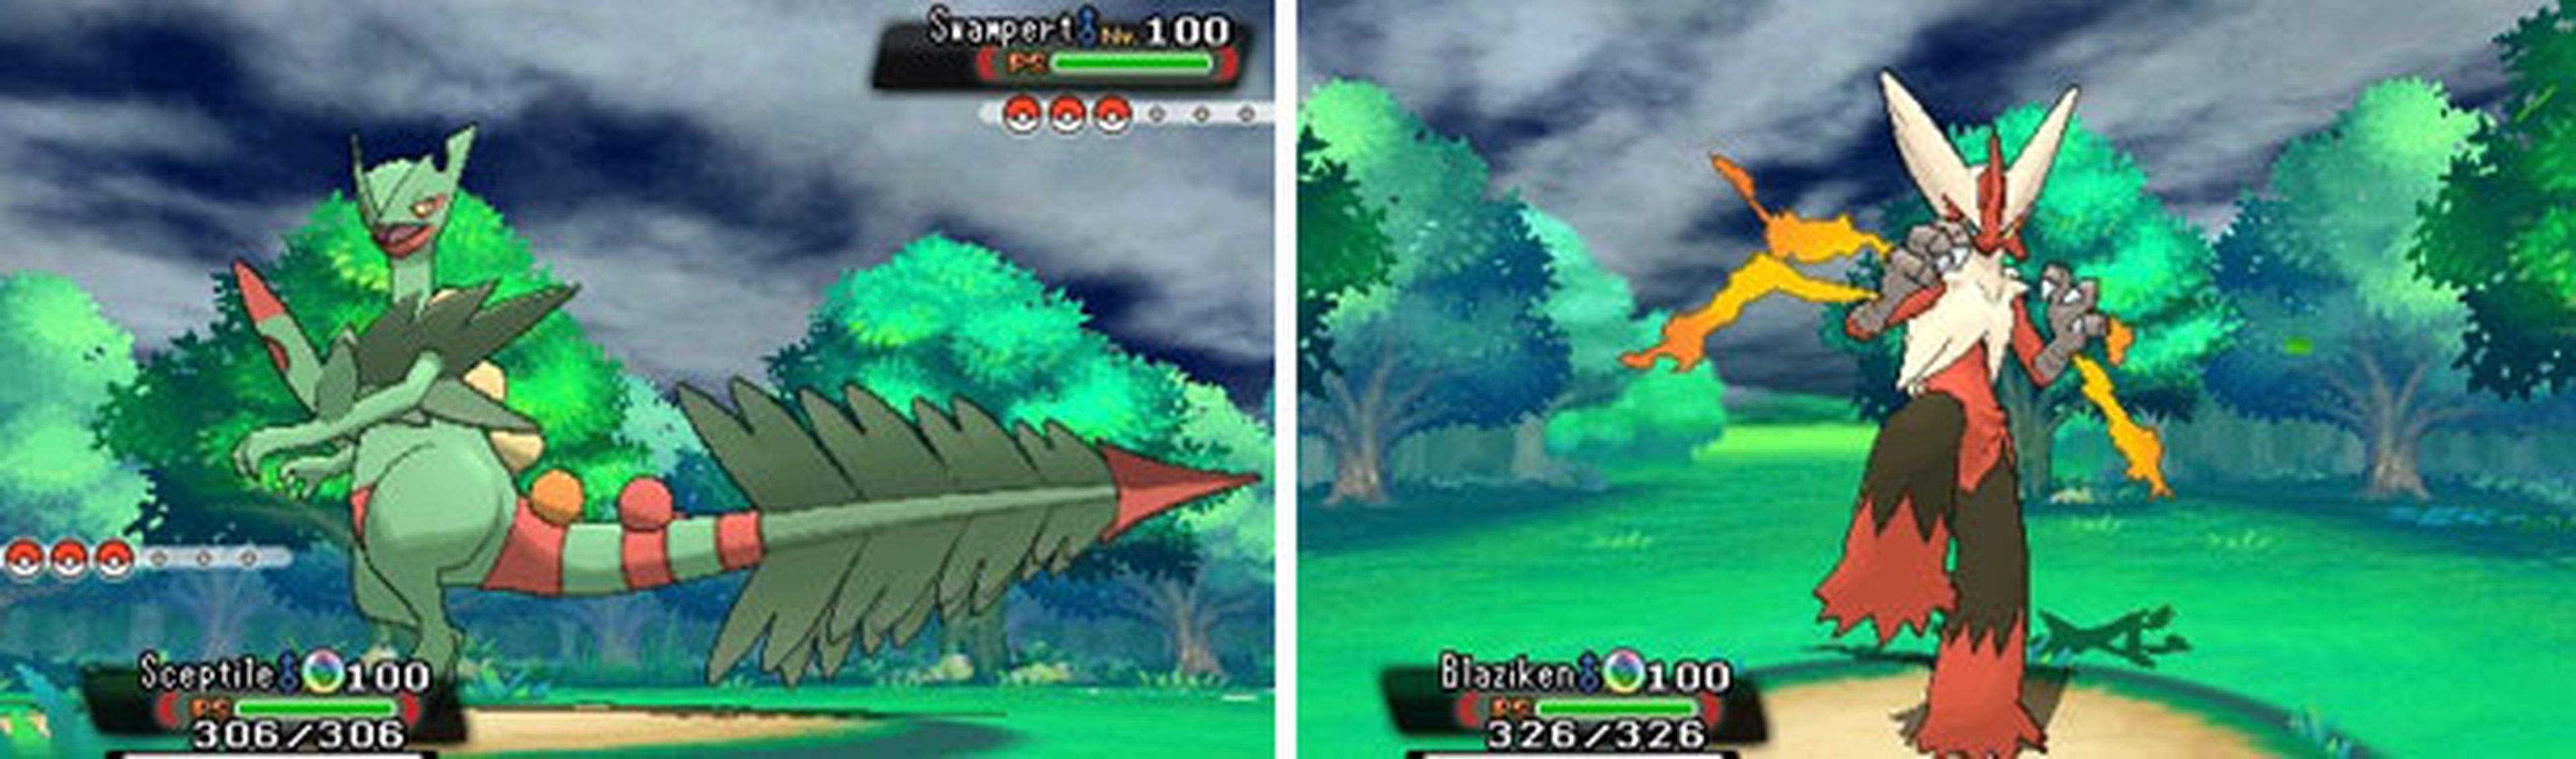 E3 2014: Nuevas imágenes y Megaevoluciones de Pokémon Rubí Omega y Zafiro Alfa